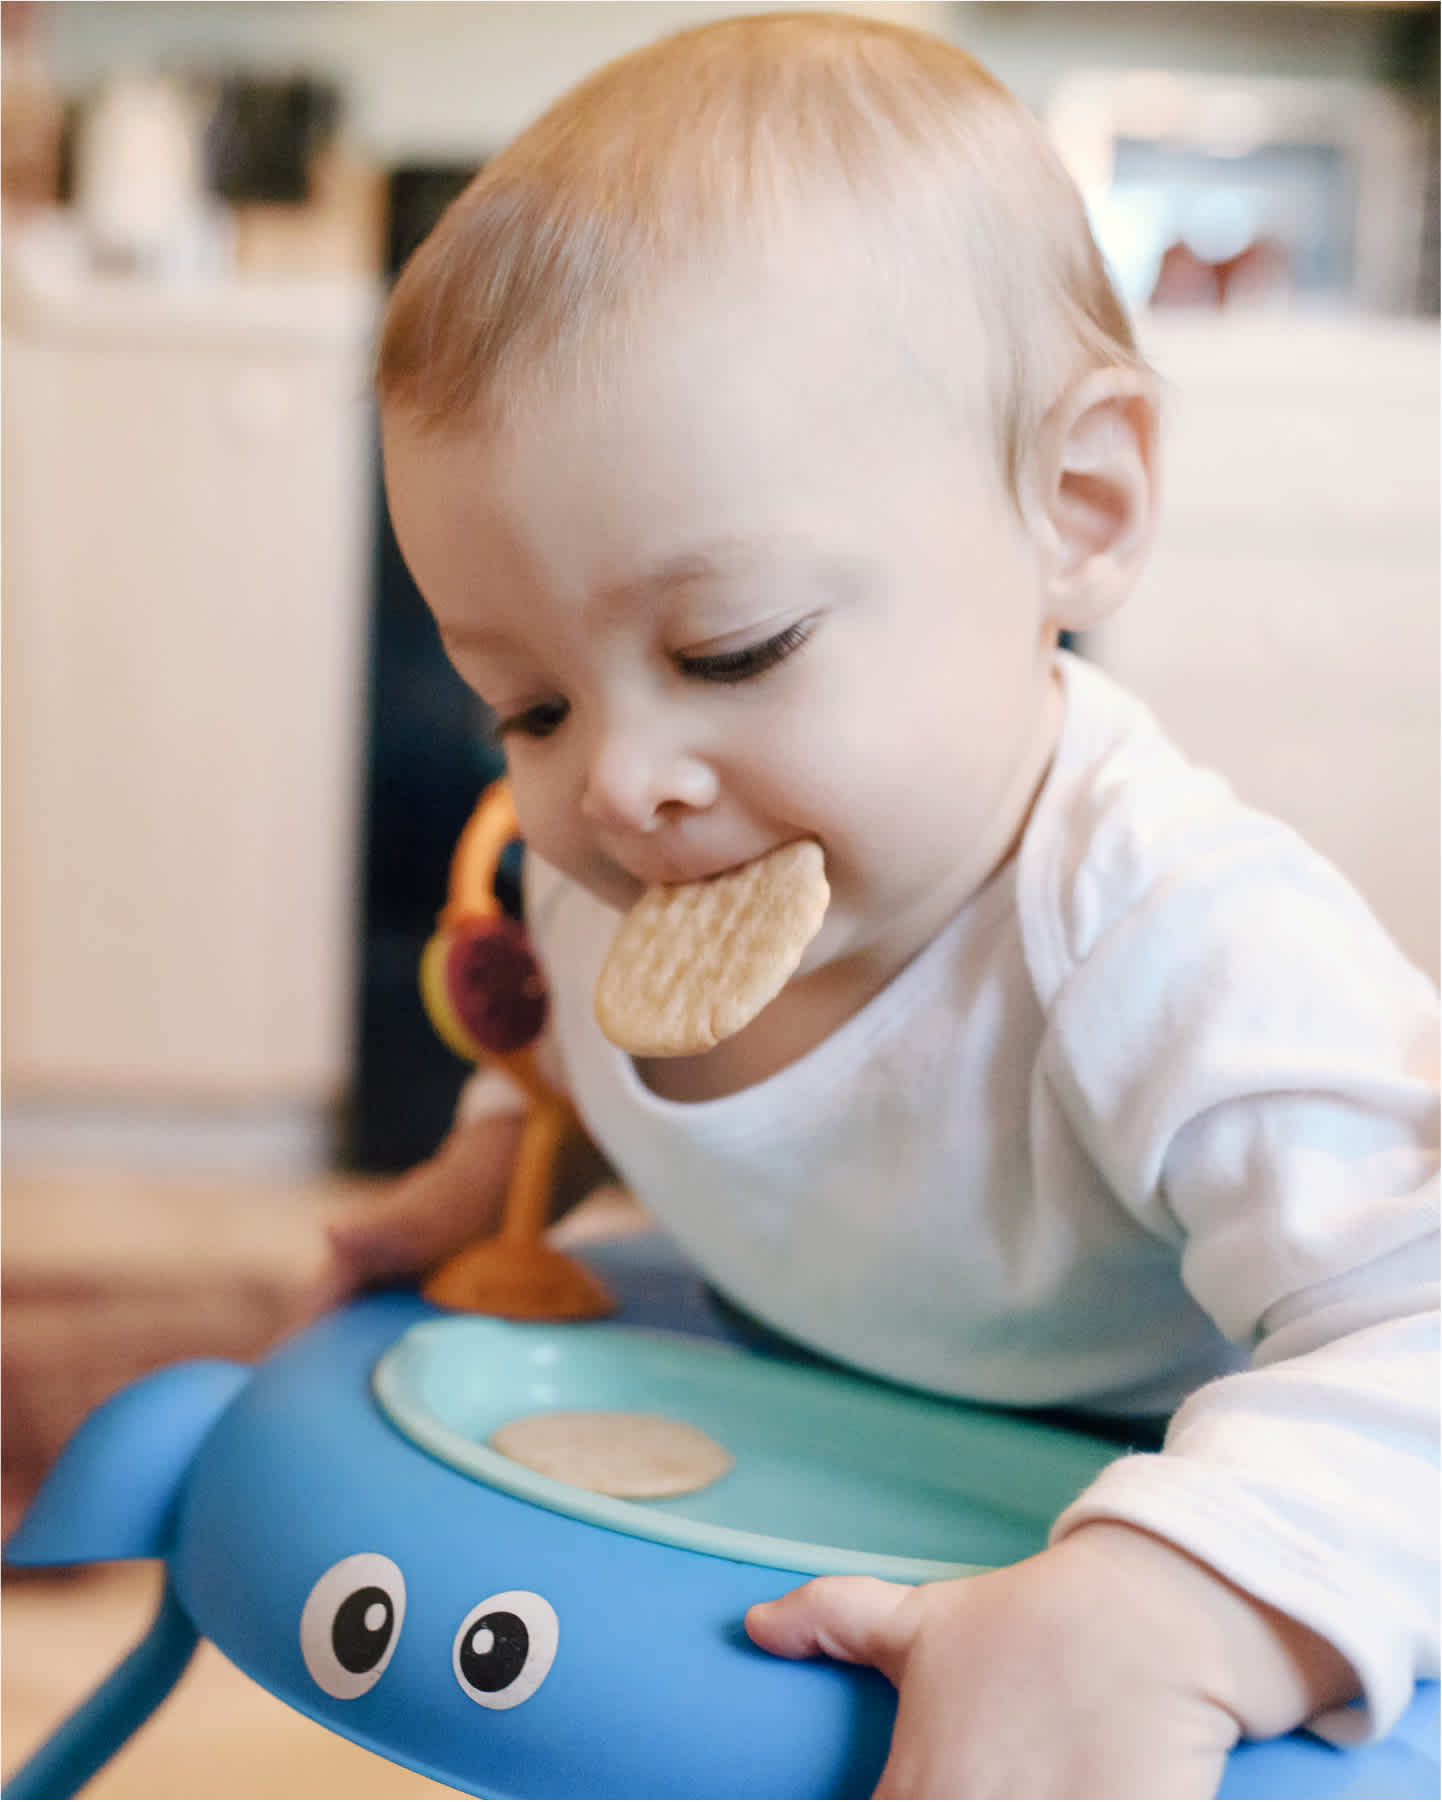 Baby eating teether crackers in walker.